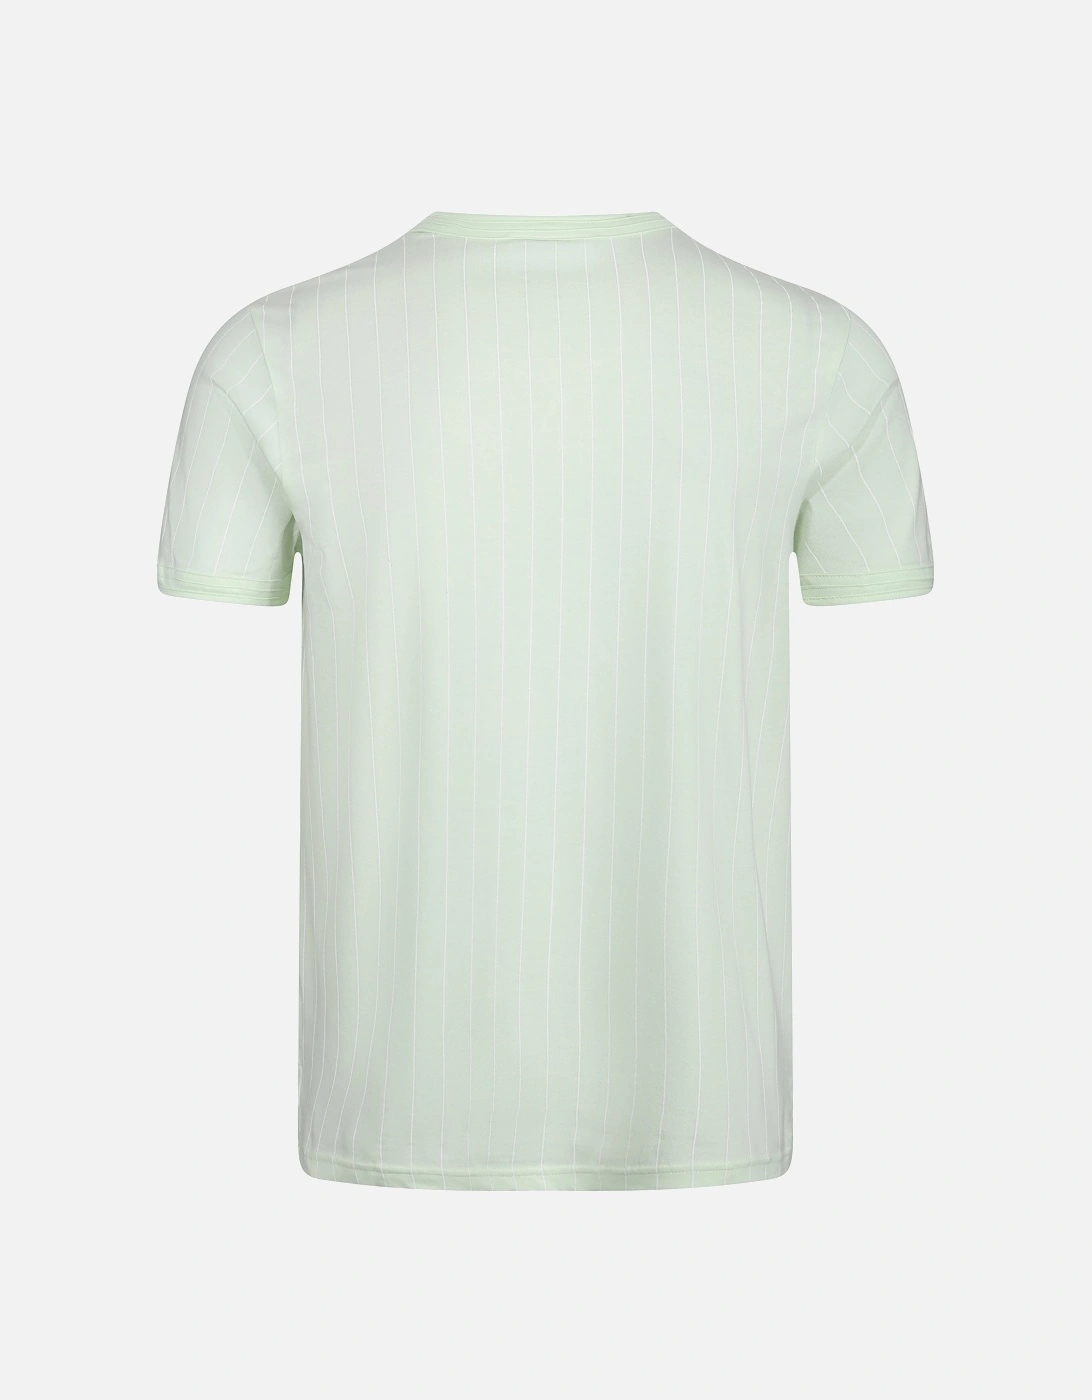 Guilo Striped Crew Neck Mens T-Shirt | Ambrosia/White